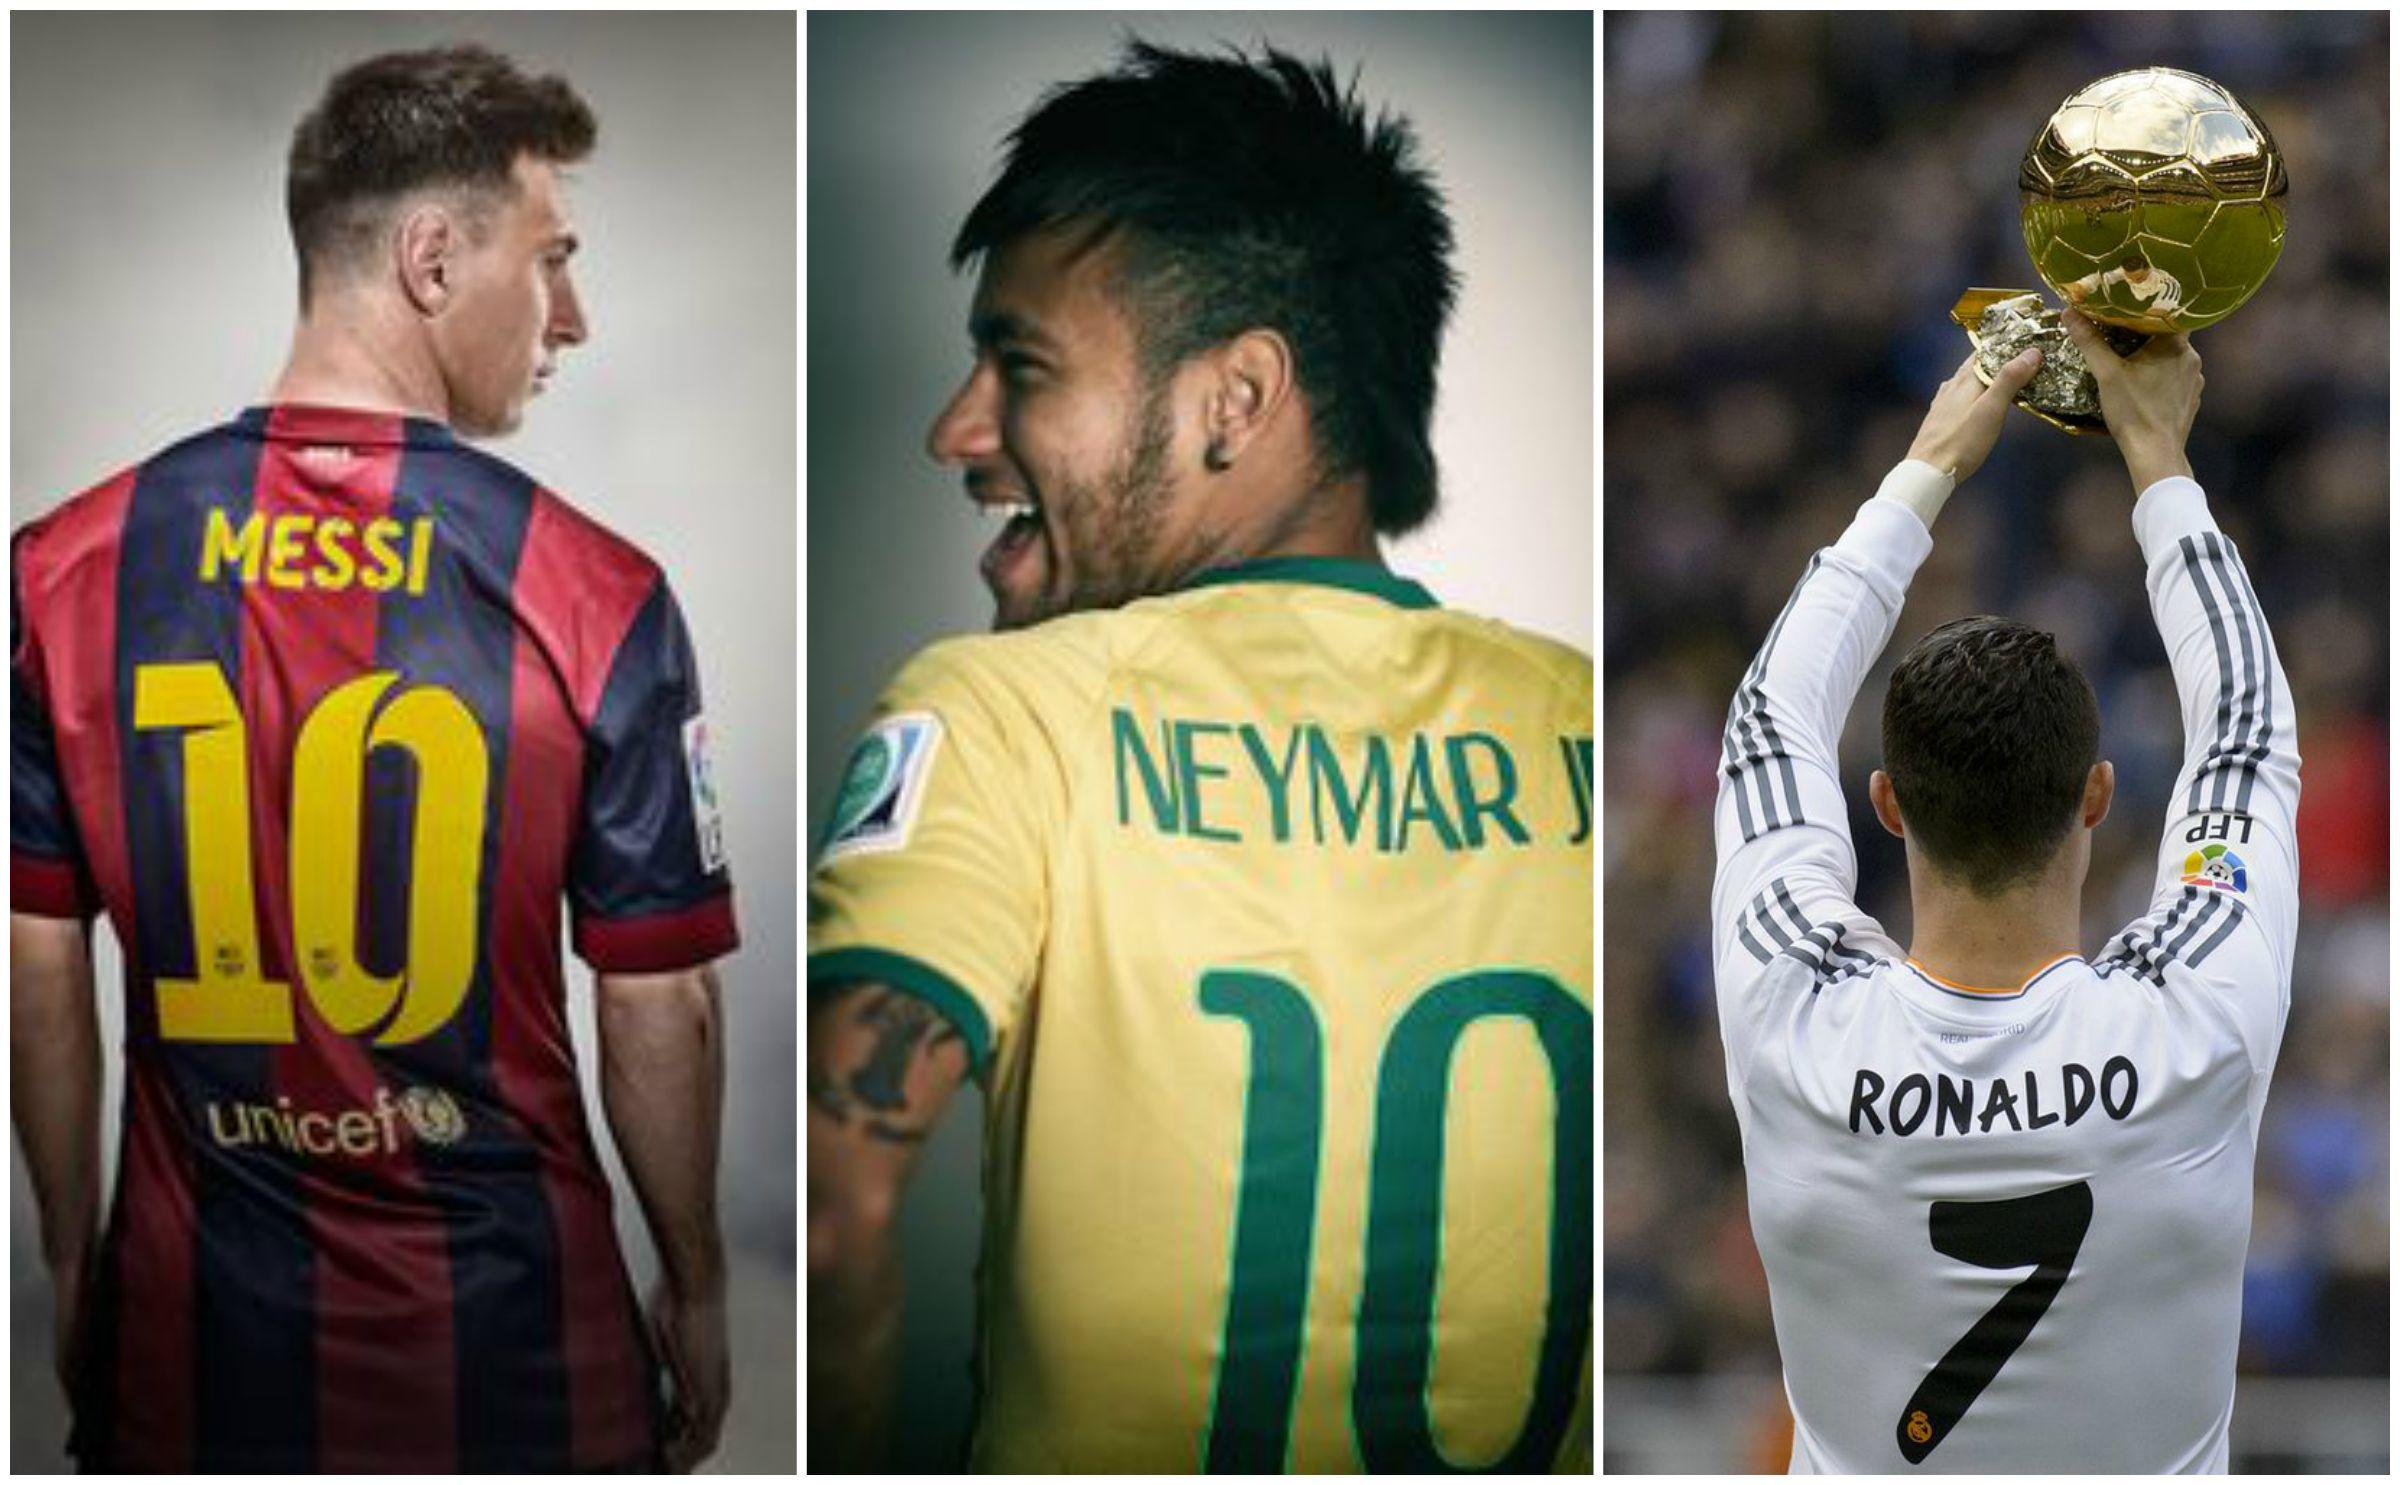 Messi careca 🧐 #messi #neymar #qualvoceprefere #enquete #quiz